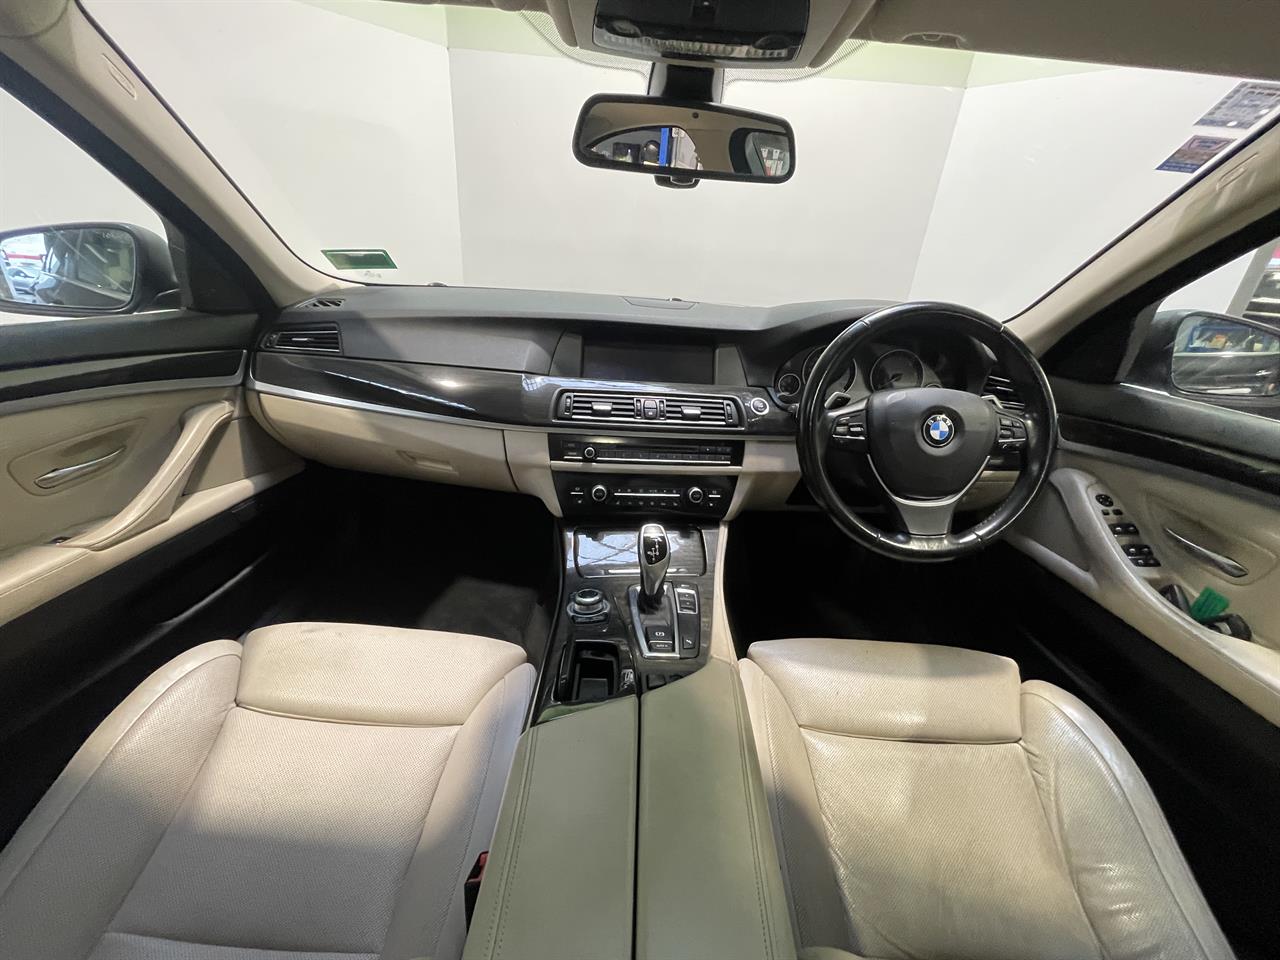 2010 BMW 550i